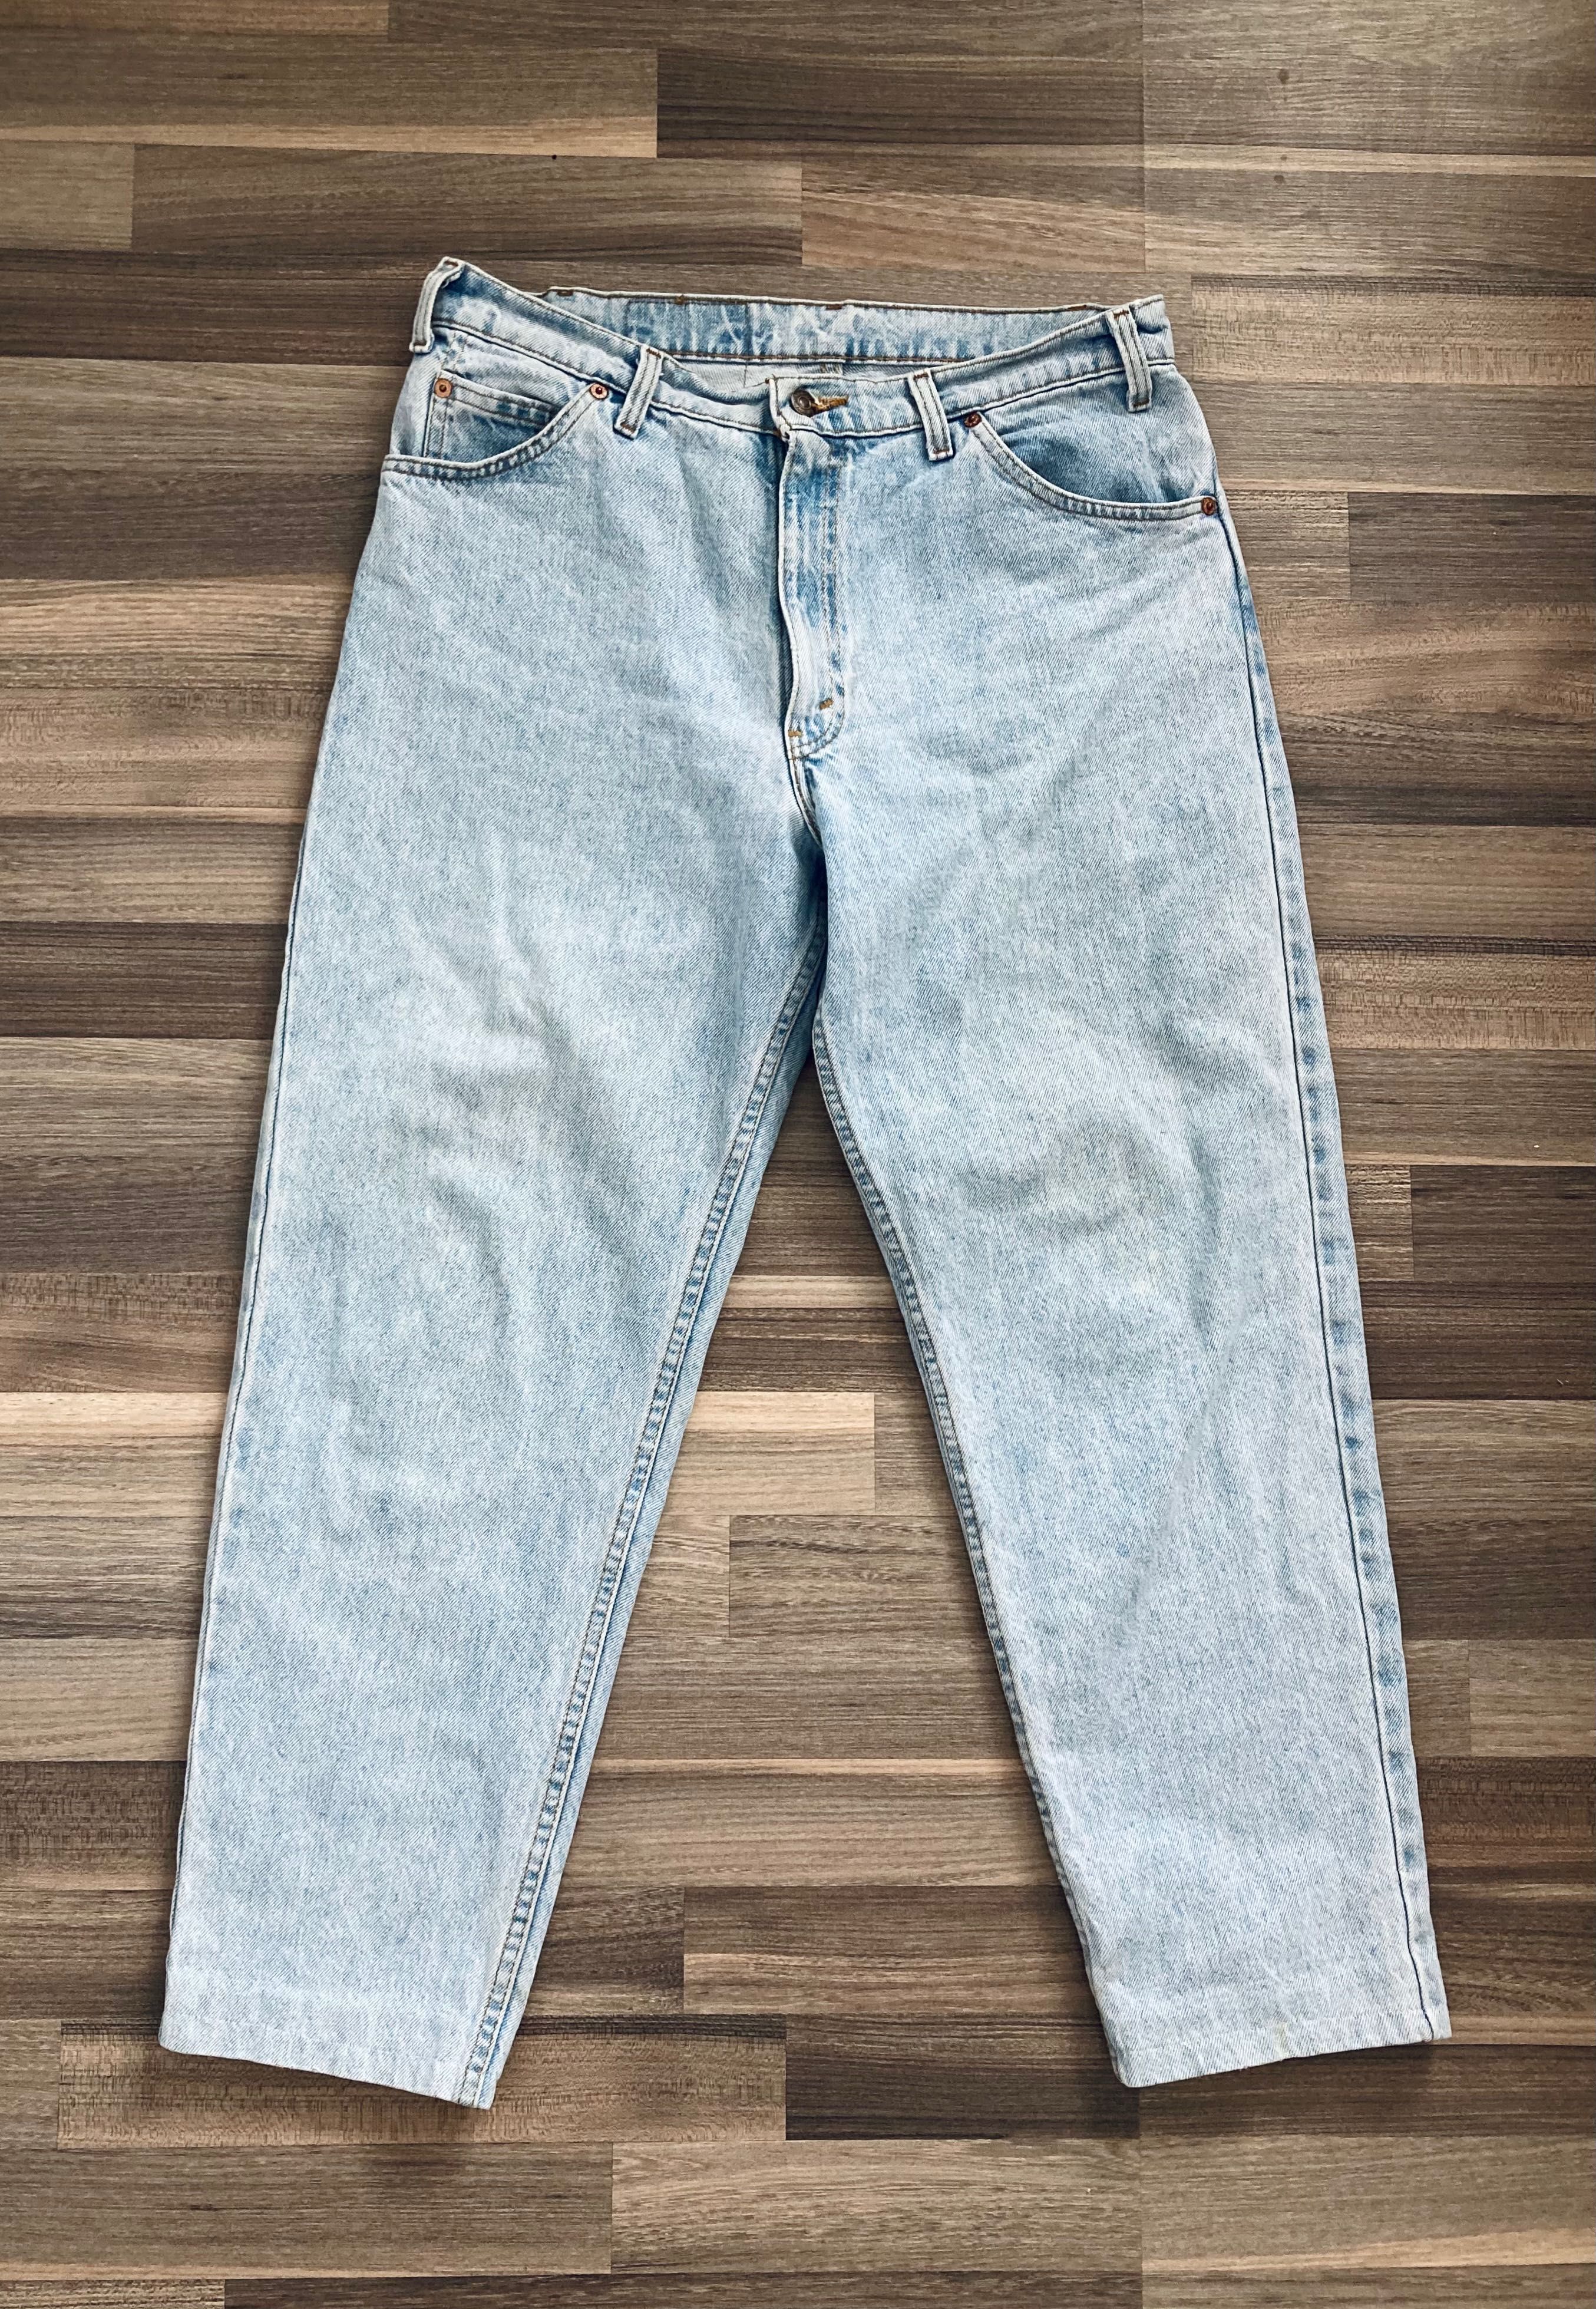 Levi’s vintage jeans